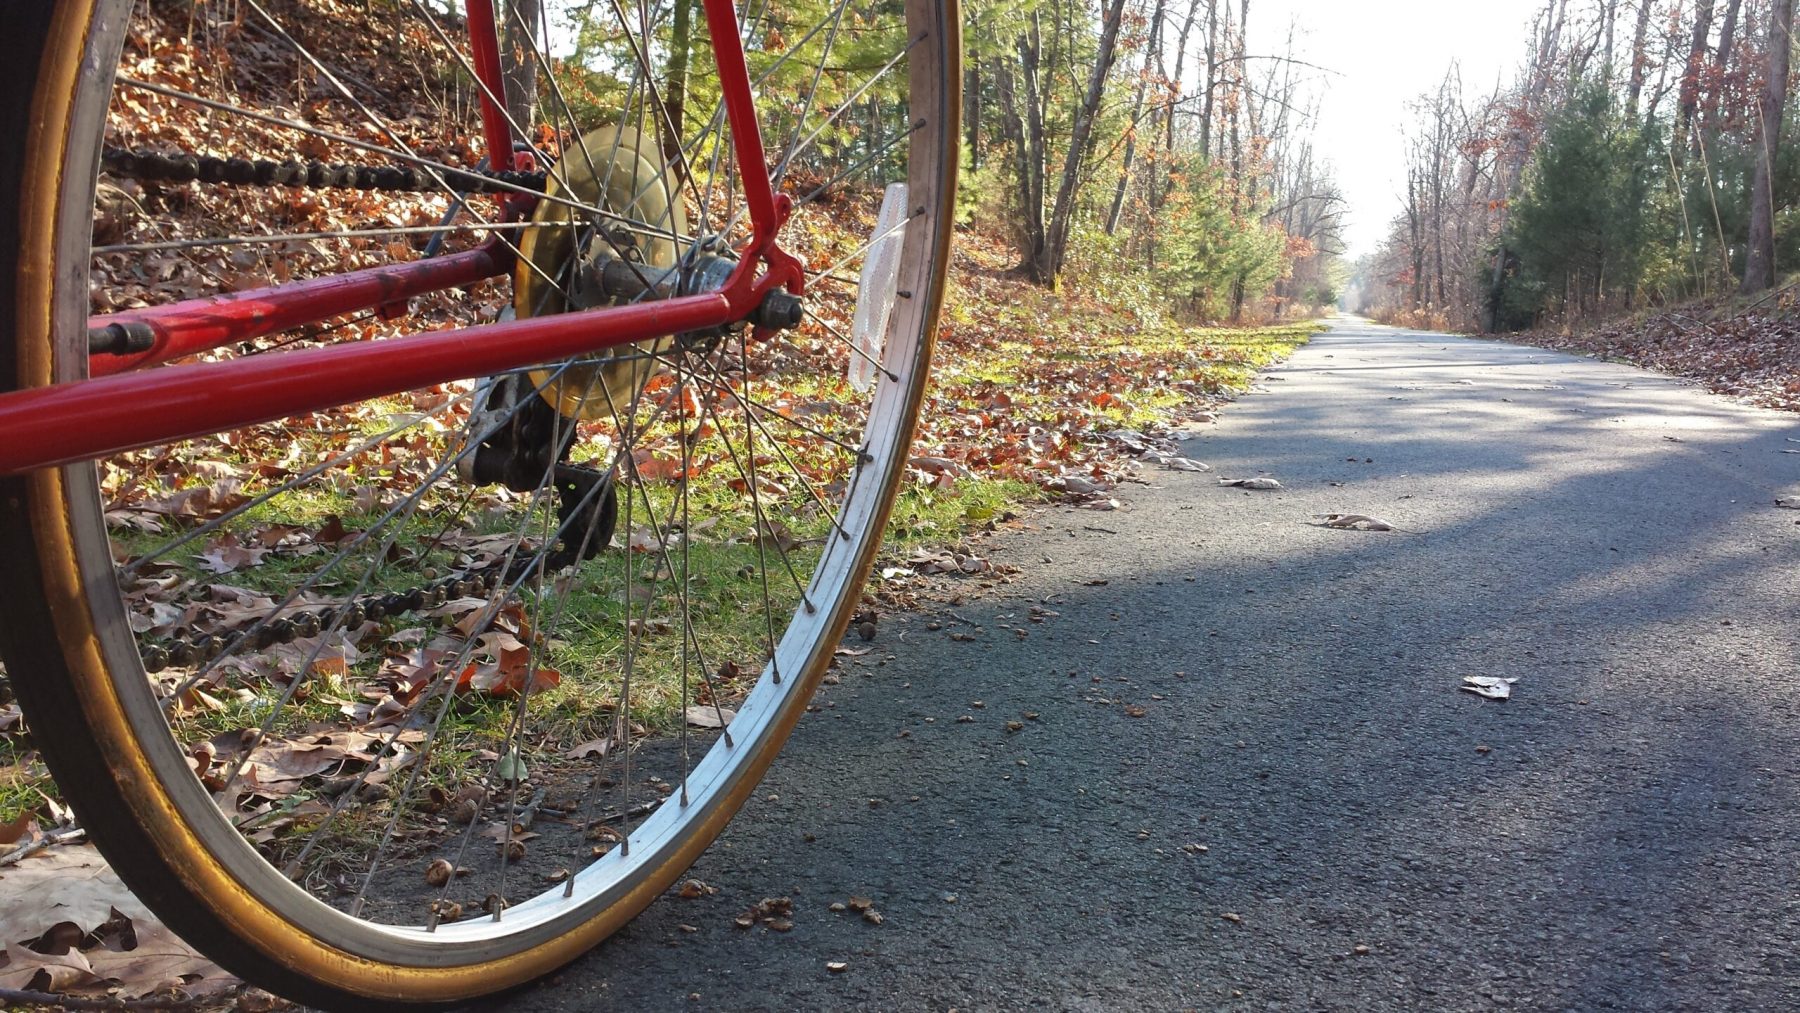 A New England bike trail in late fall.